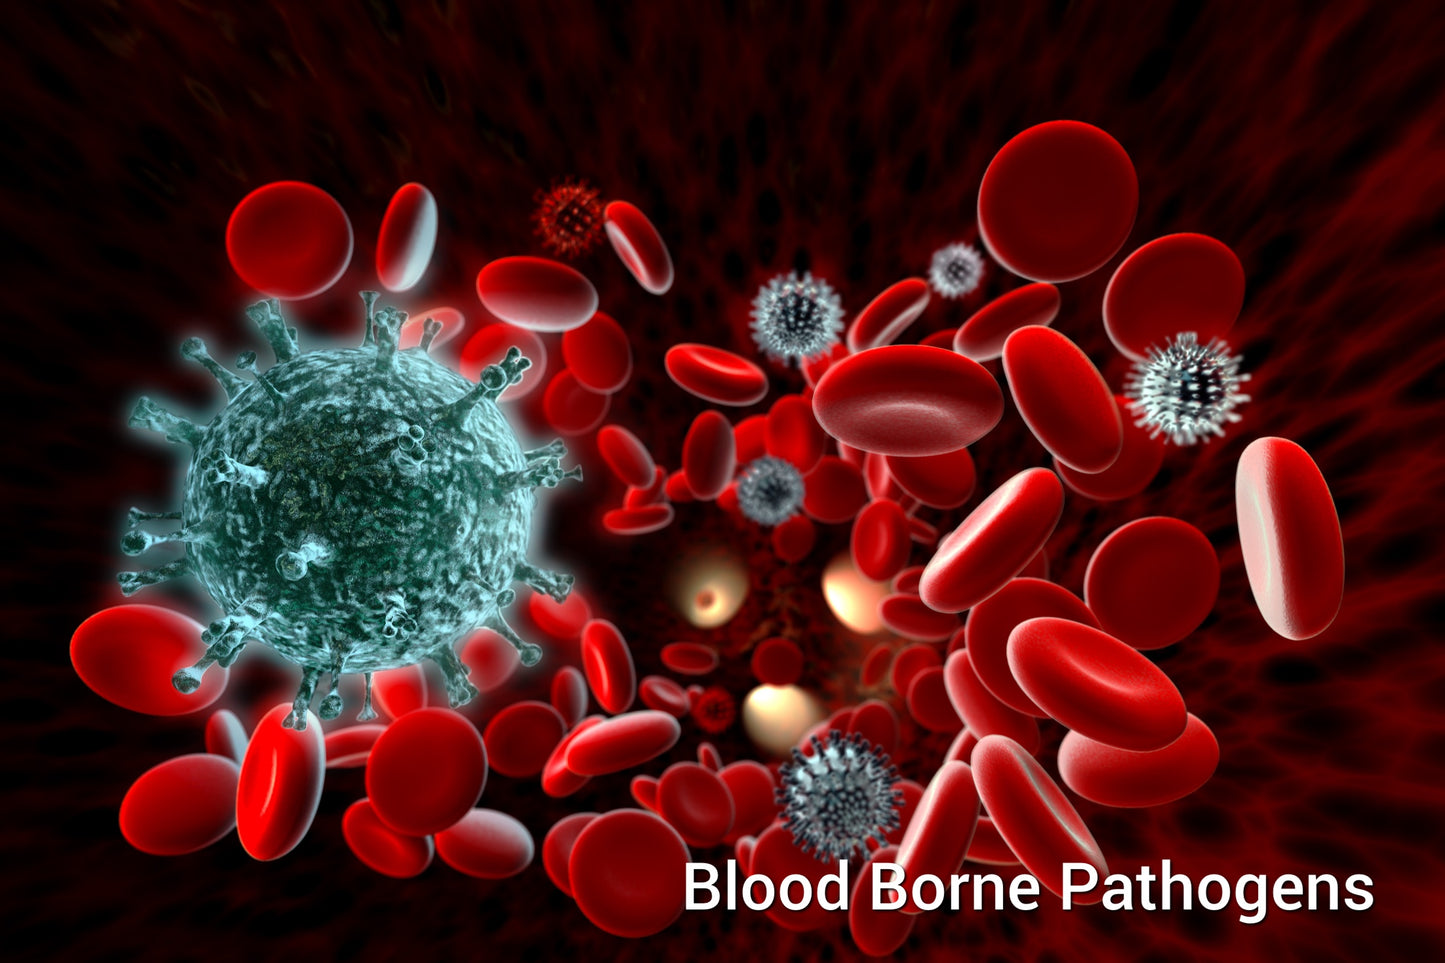 HSI - Bloodborne Pathogens